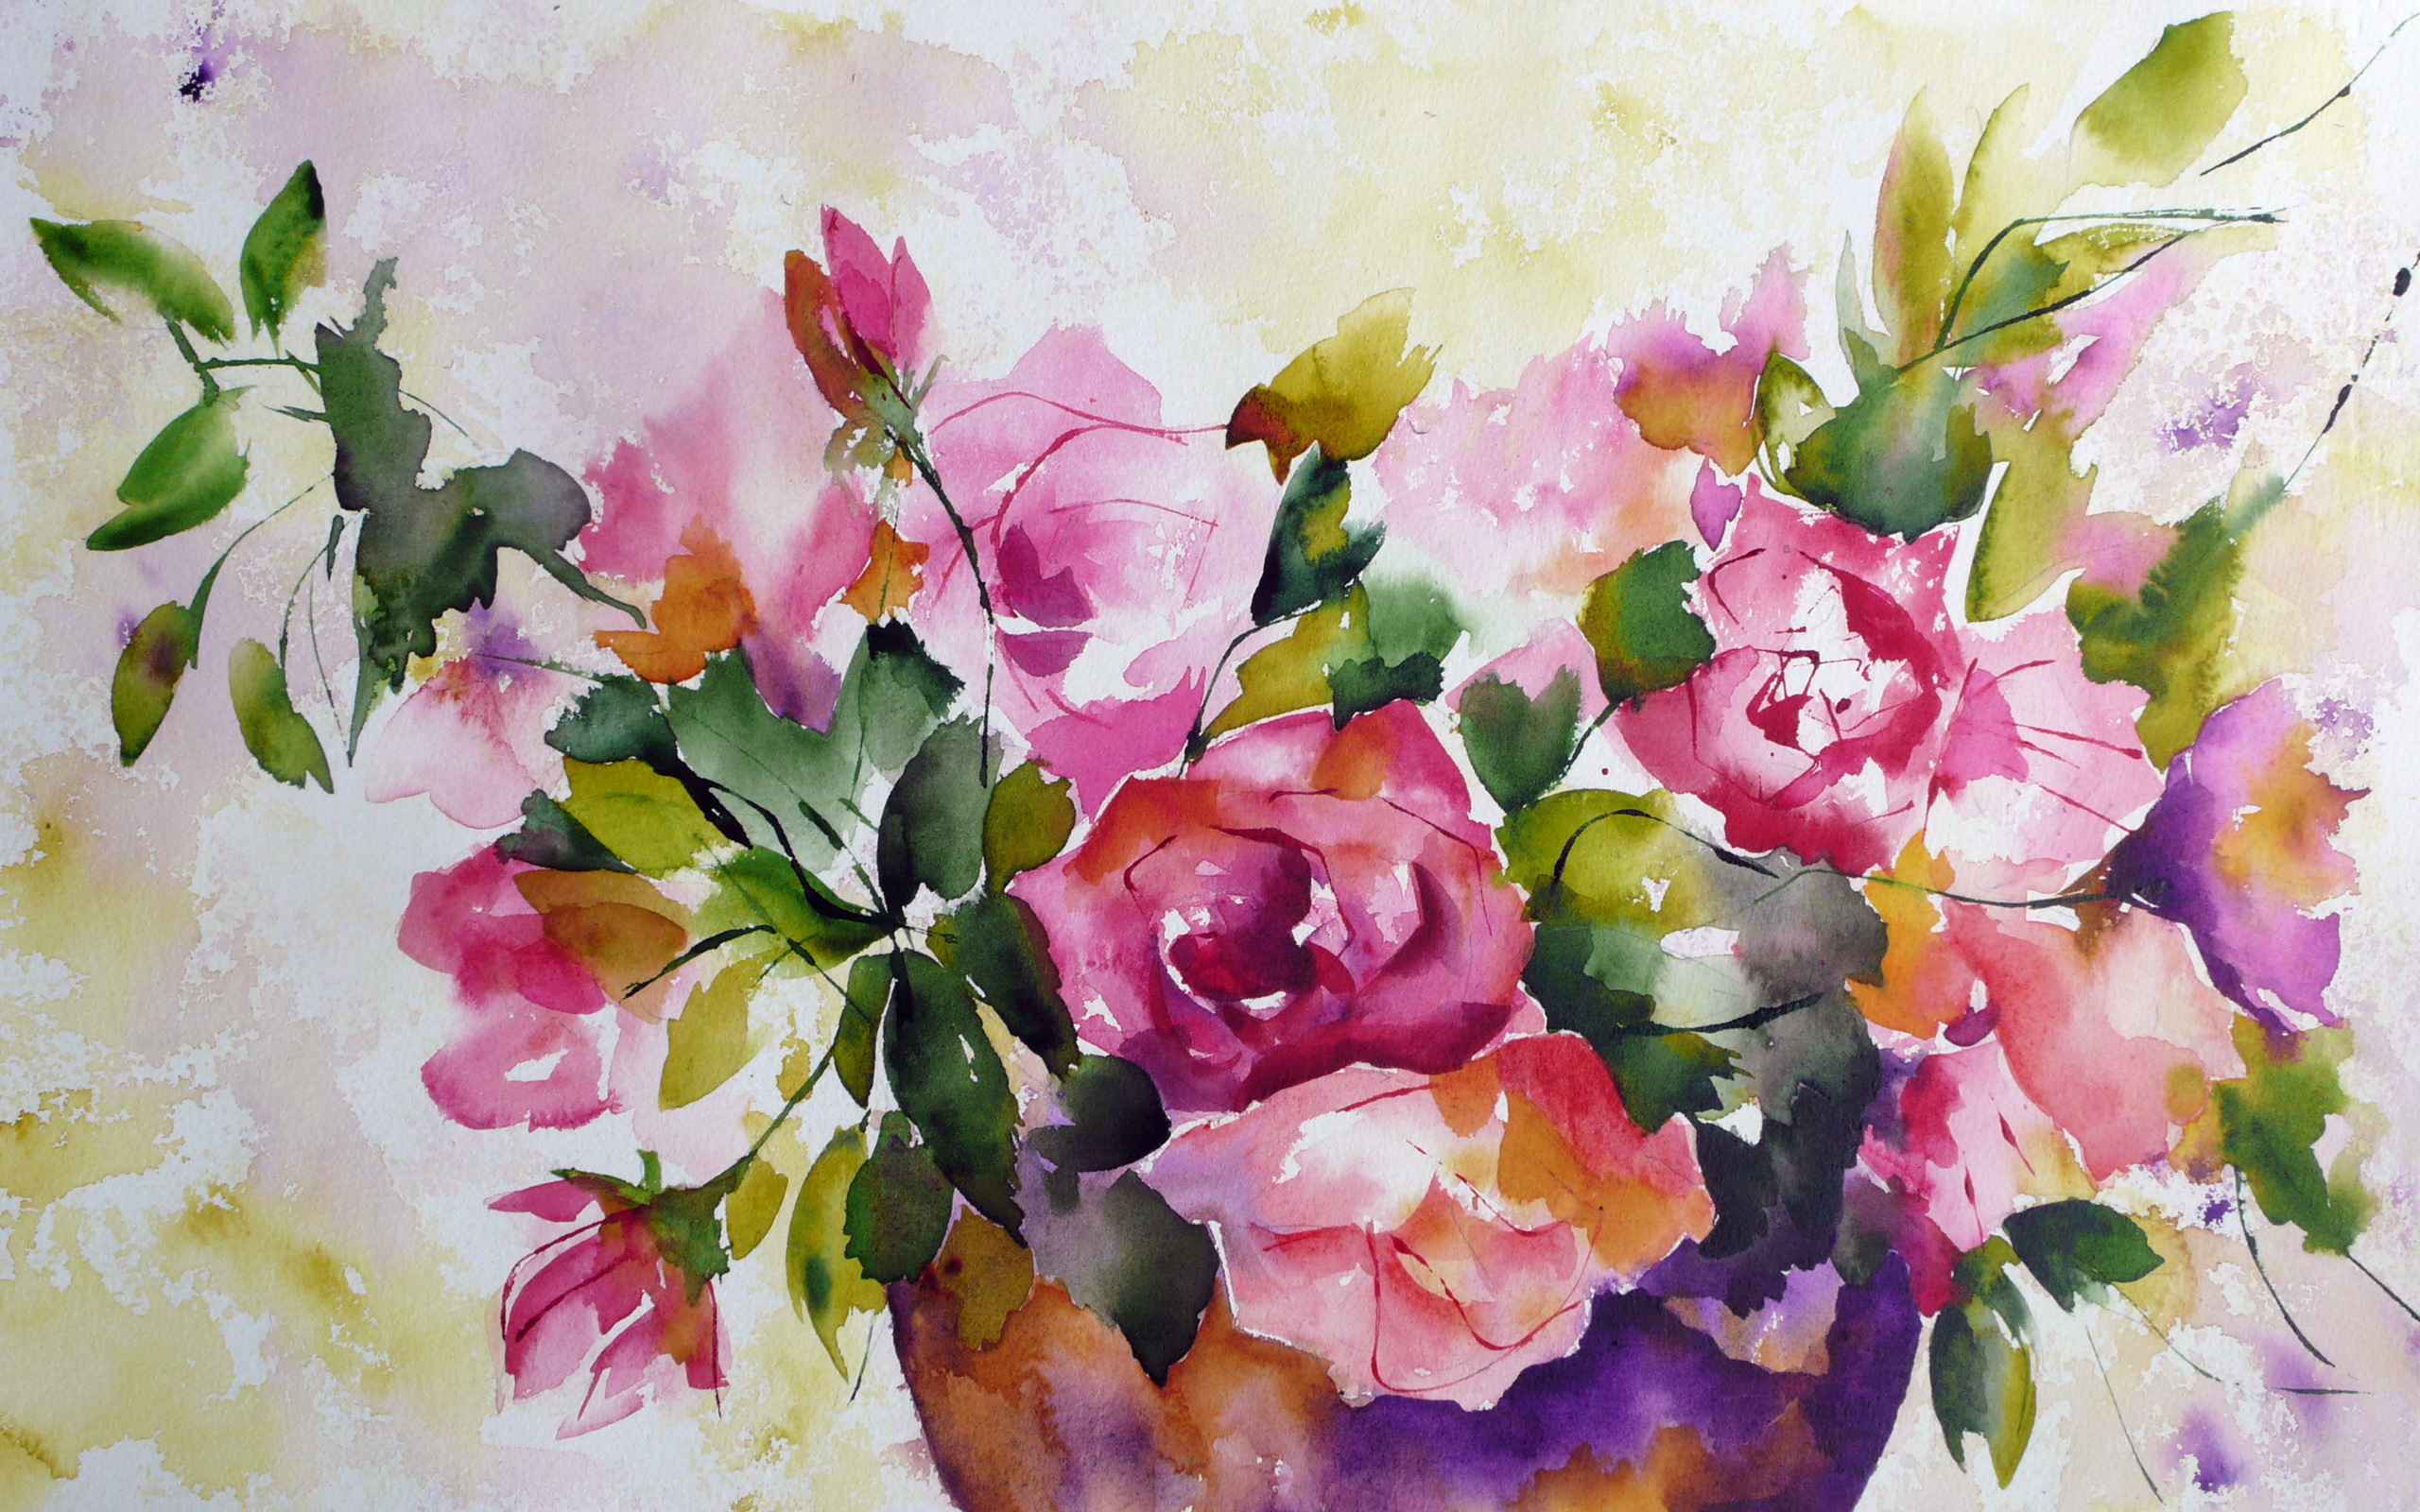 [38+] Watercolor Flowers Wallpaper | WallpaperSafari.com